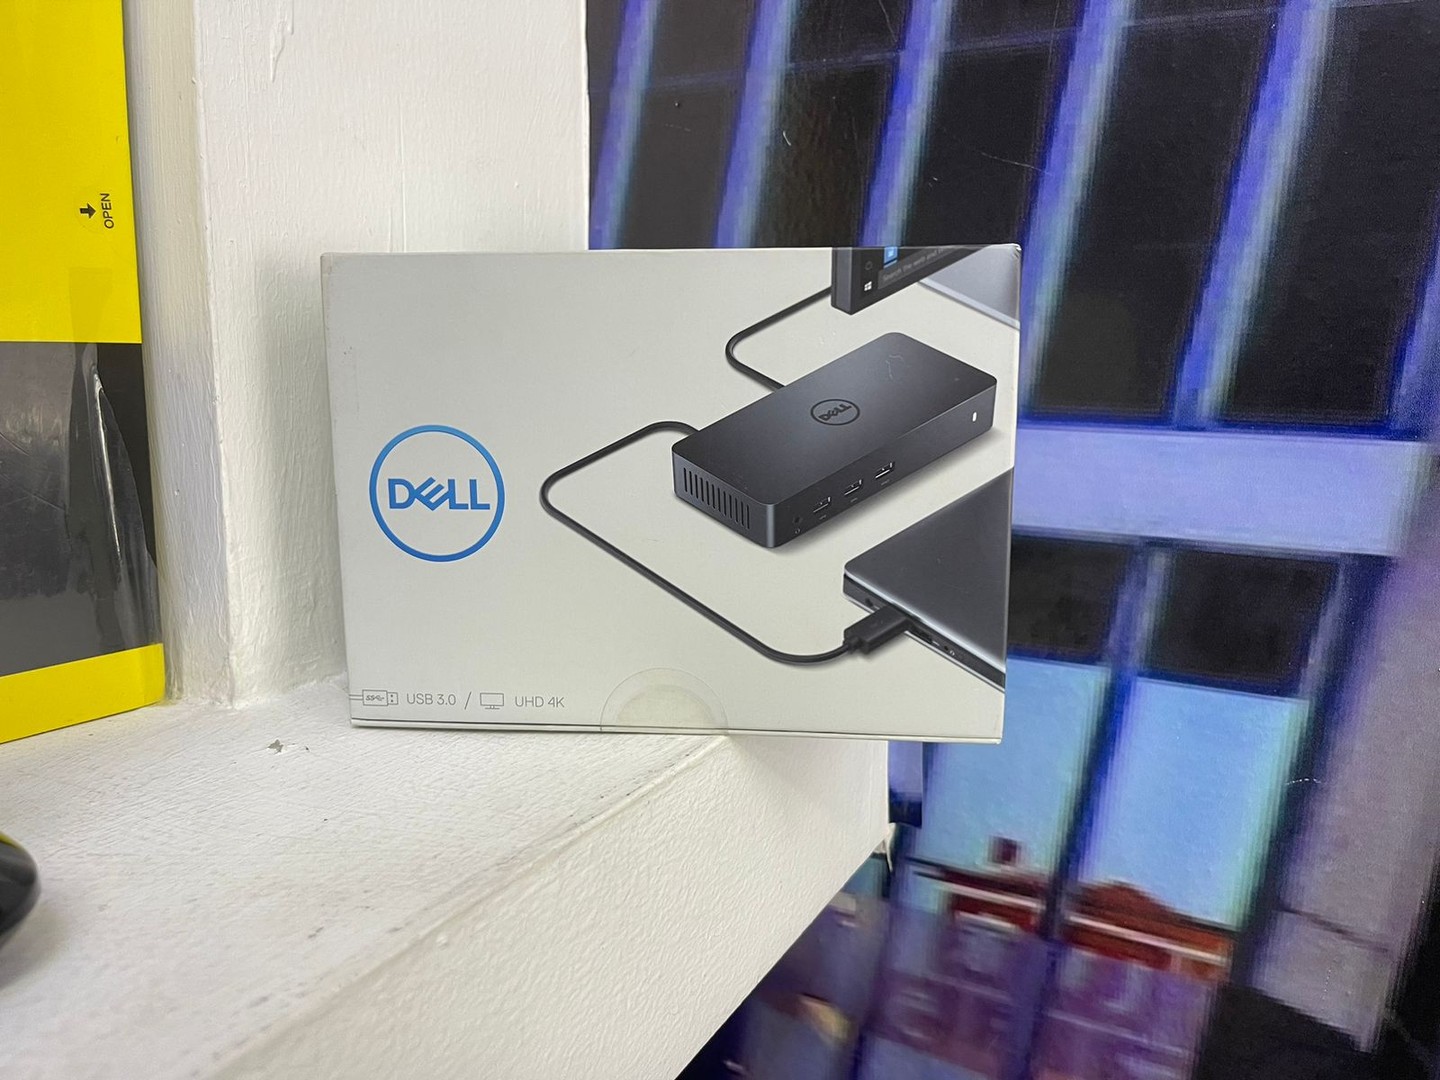 computadoras y laptops - Estacios de Acoplamiento Dell D3100 UHD4K USB 3,0 6